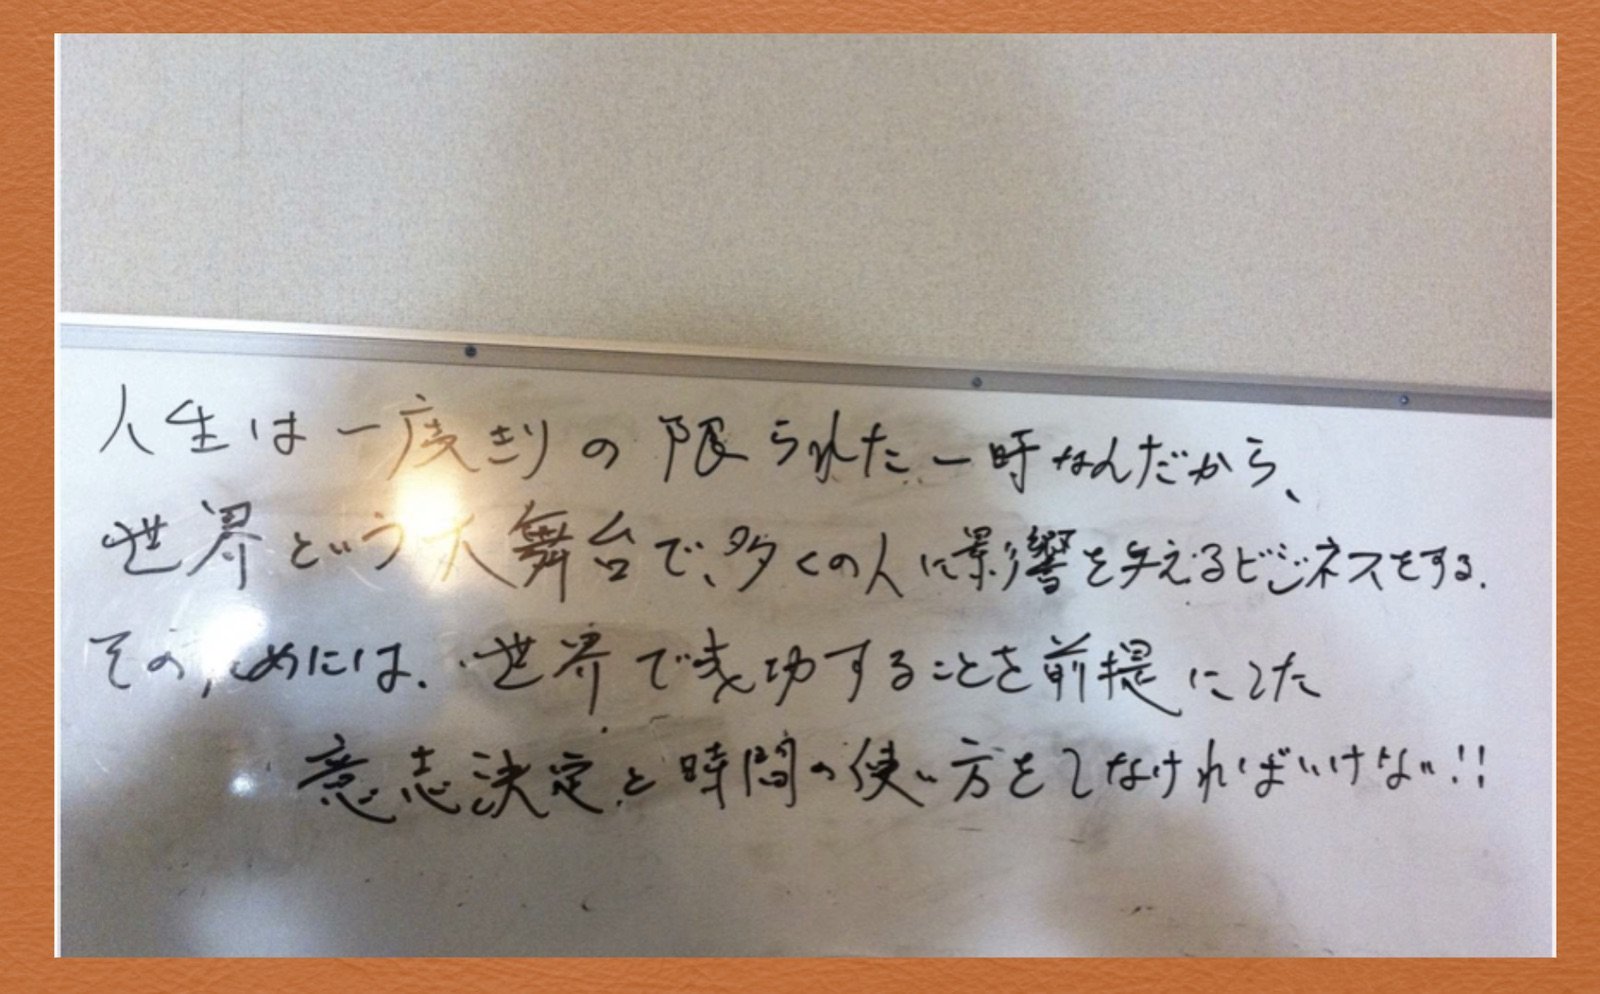 オフィスのホワイトボードに武田氏が書いていたメッセージ。スマホ×ソーシャルは「2度と来ない程のビッグチャンスになる」と確信していたという